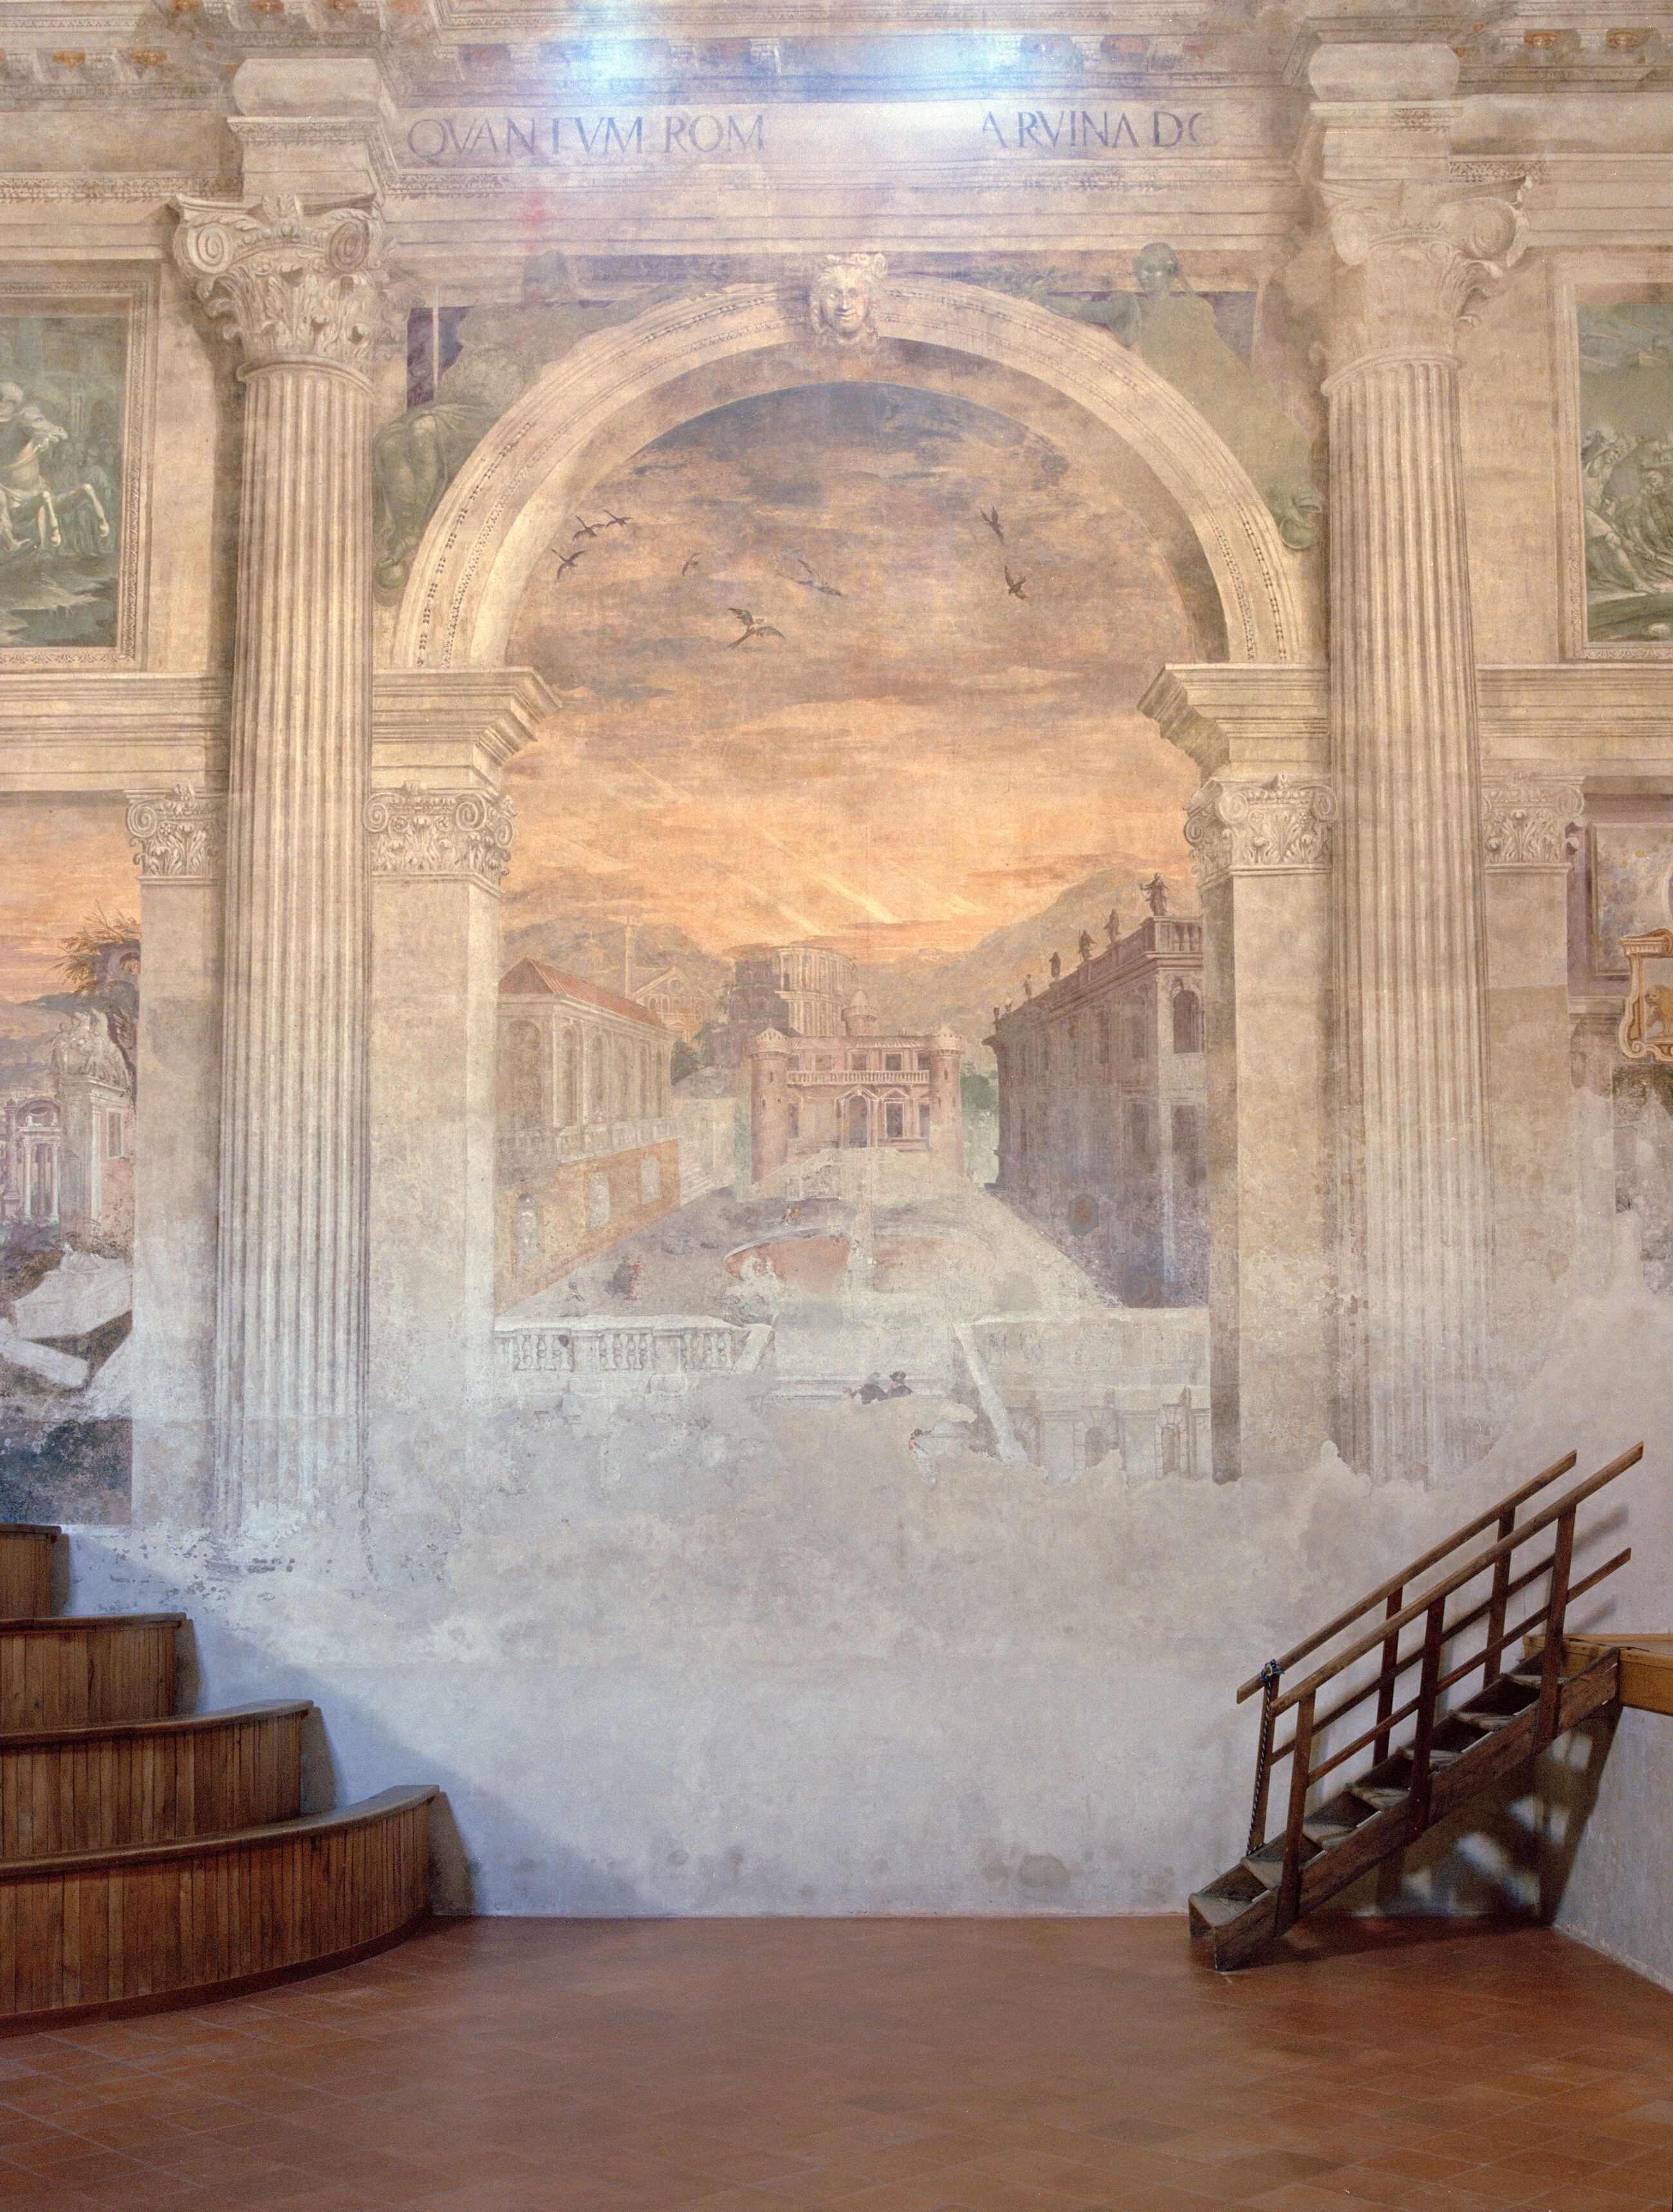 Los frescos de los muros ilustran el gusto del 'cinquecento' por las vistas romanas de tema arqueológico y los paisajes bucólicos.